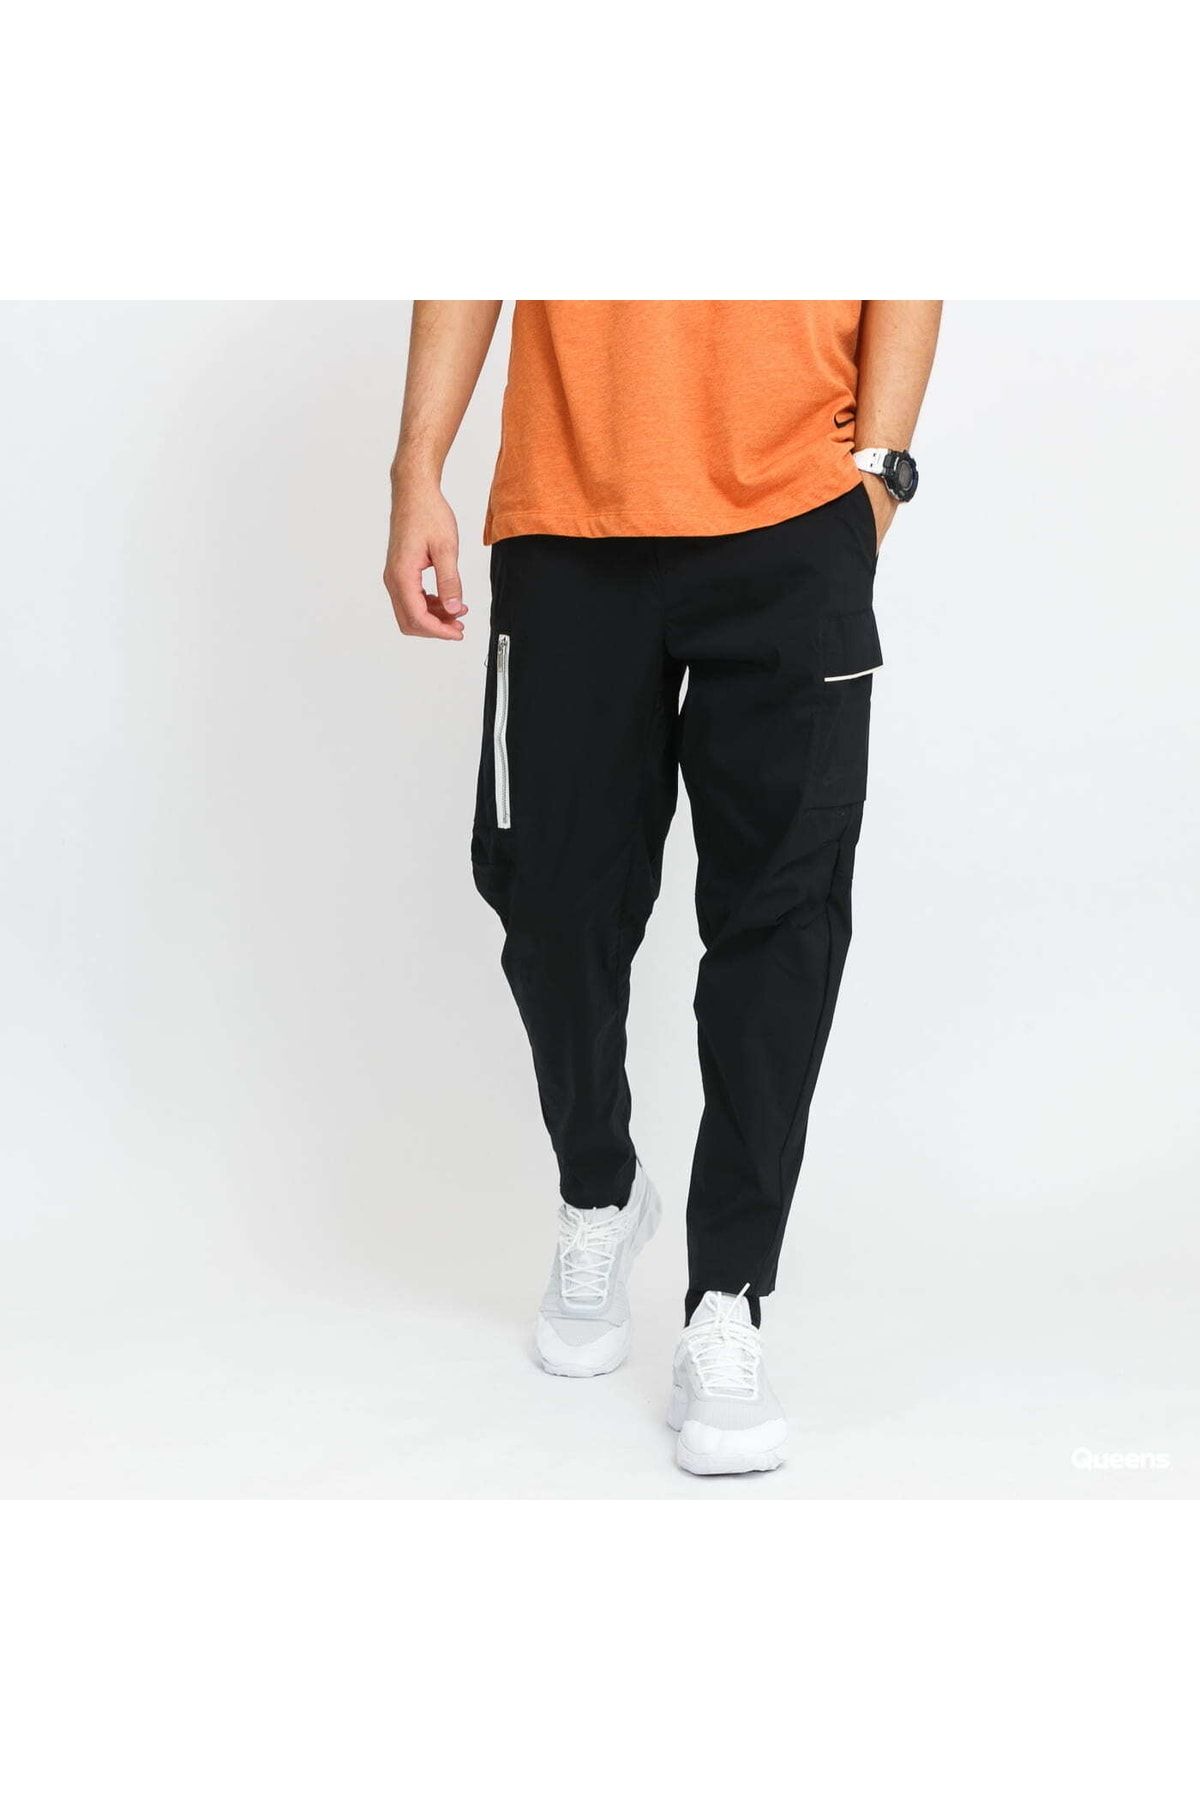 Nike Sportswear Style Essentials Woven Unlined Ince Spor Pantolon